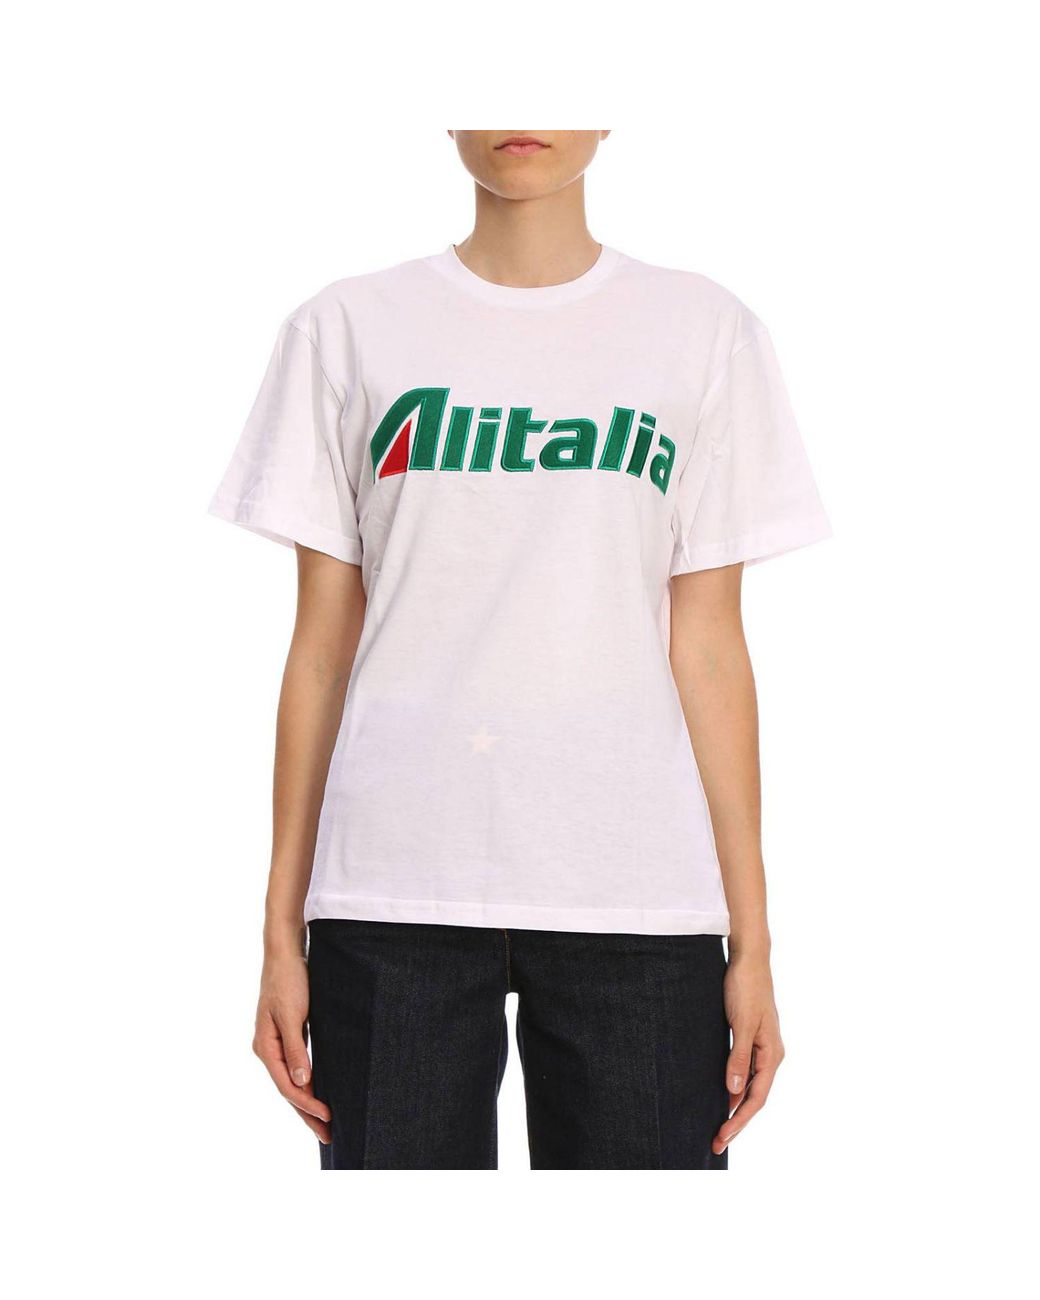 Alberta Ferretti "alitalia" Embroidered Cotton Jersey T-shirt in White |  Lyst